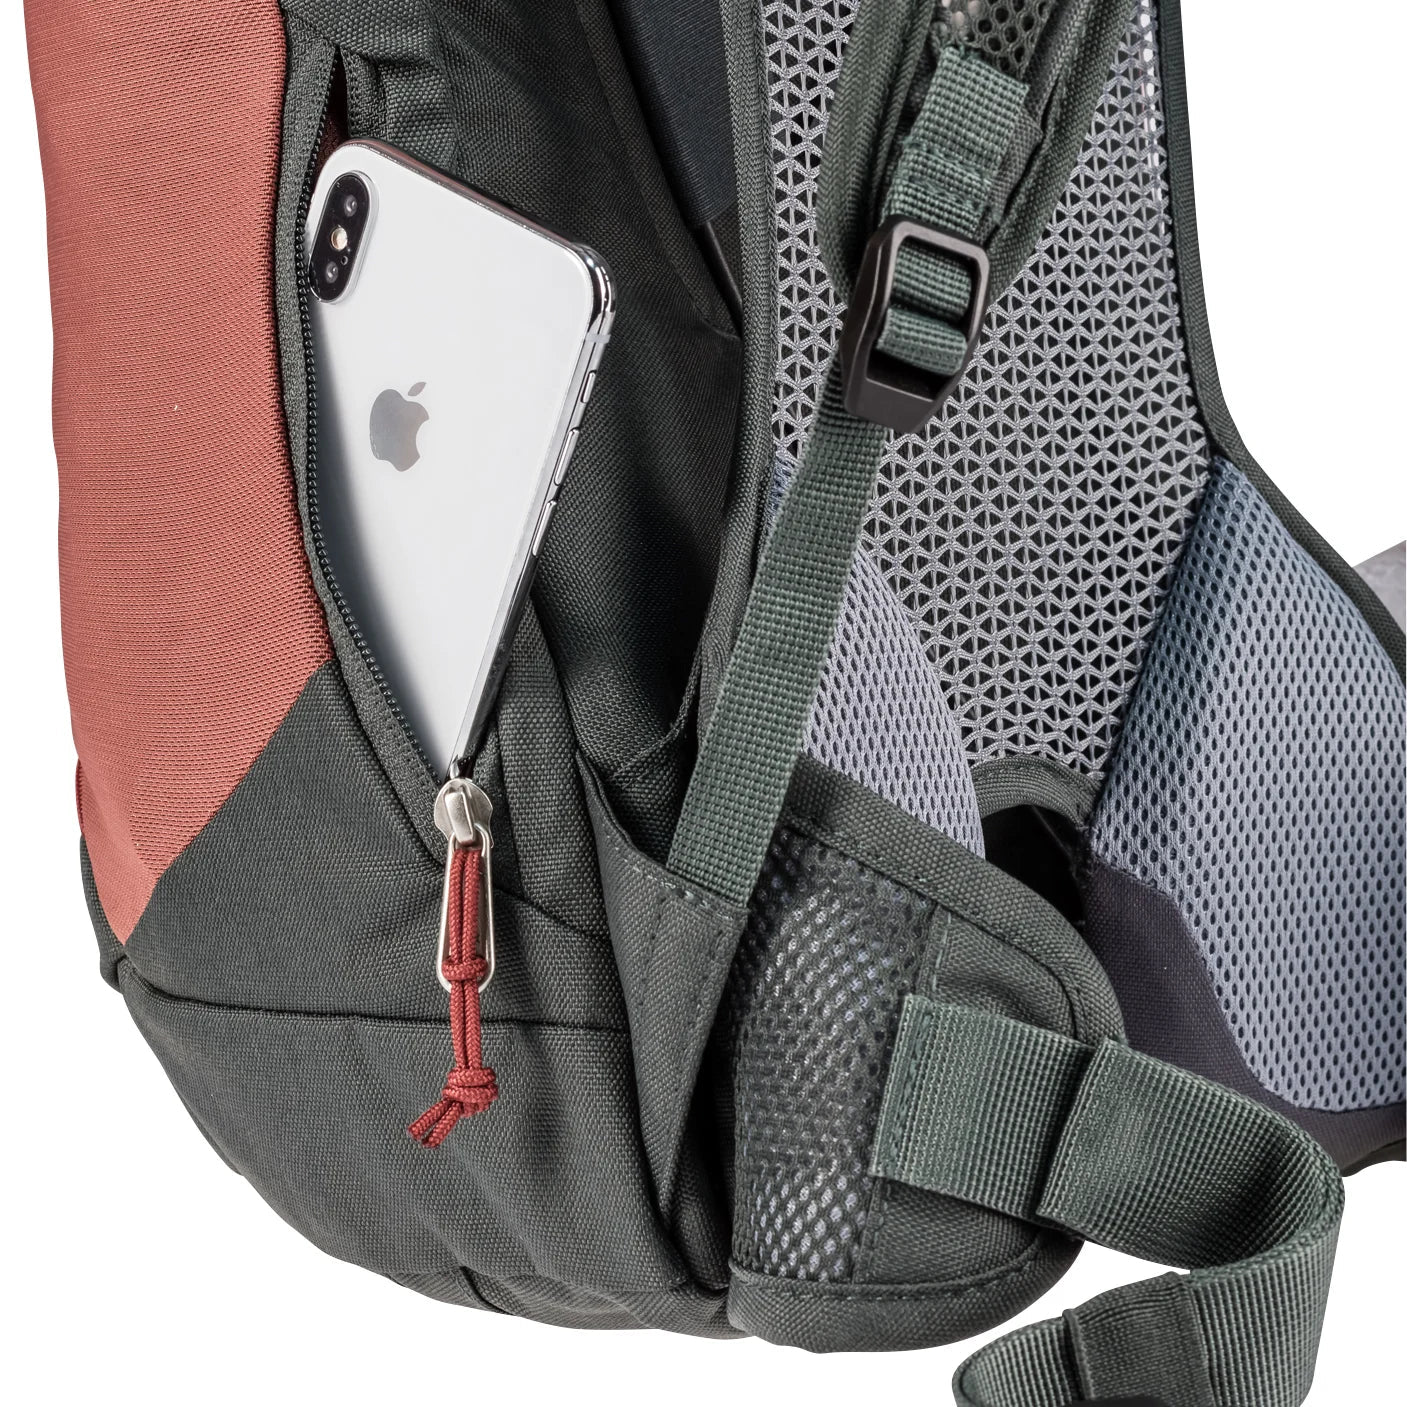 Deuter Travel AC Lite 16 hiking backpack 52 cm - redwood-ivy